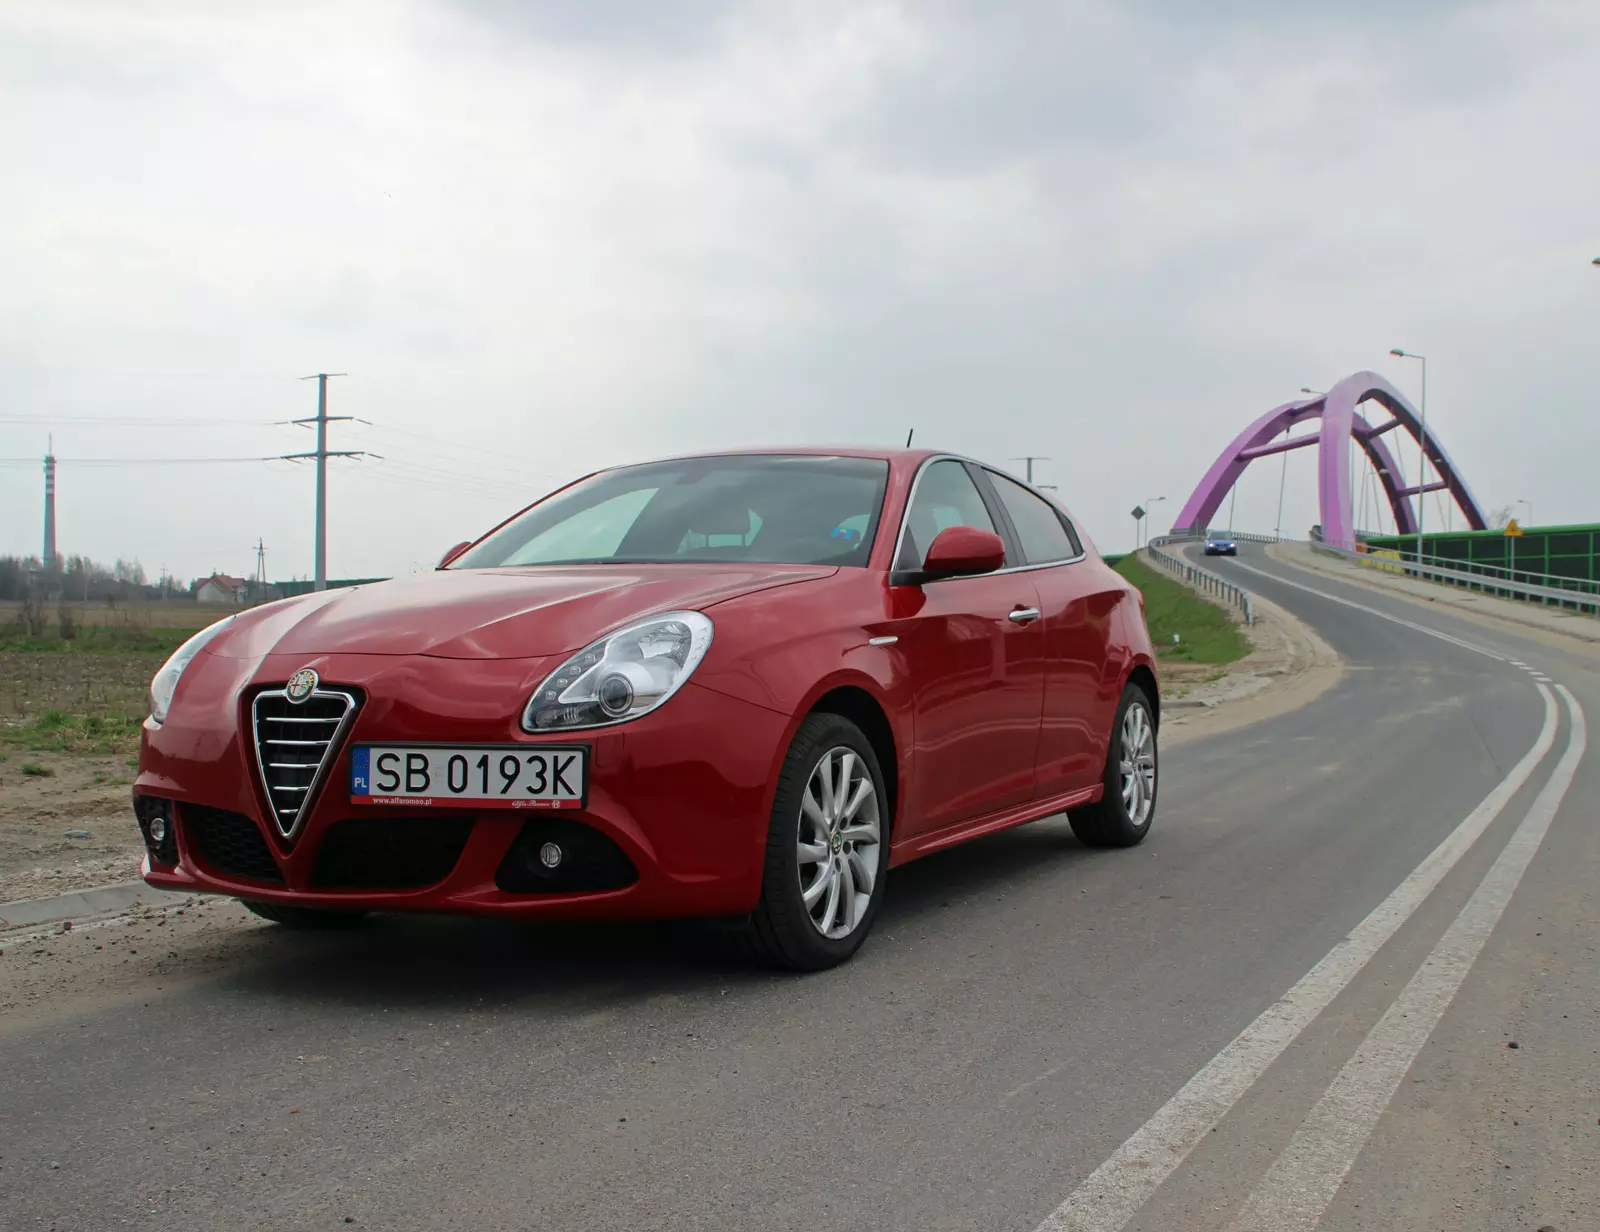 Alfa Romeo Giulietta 1.4 TB z LPG - ile to kosztuje?